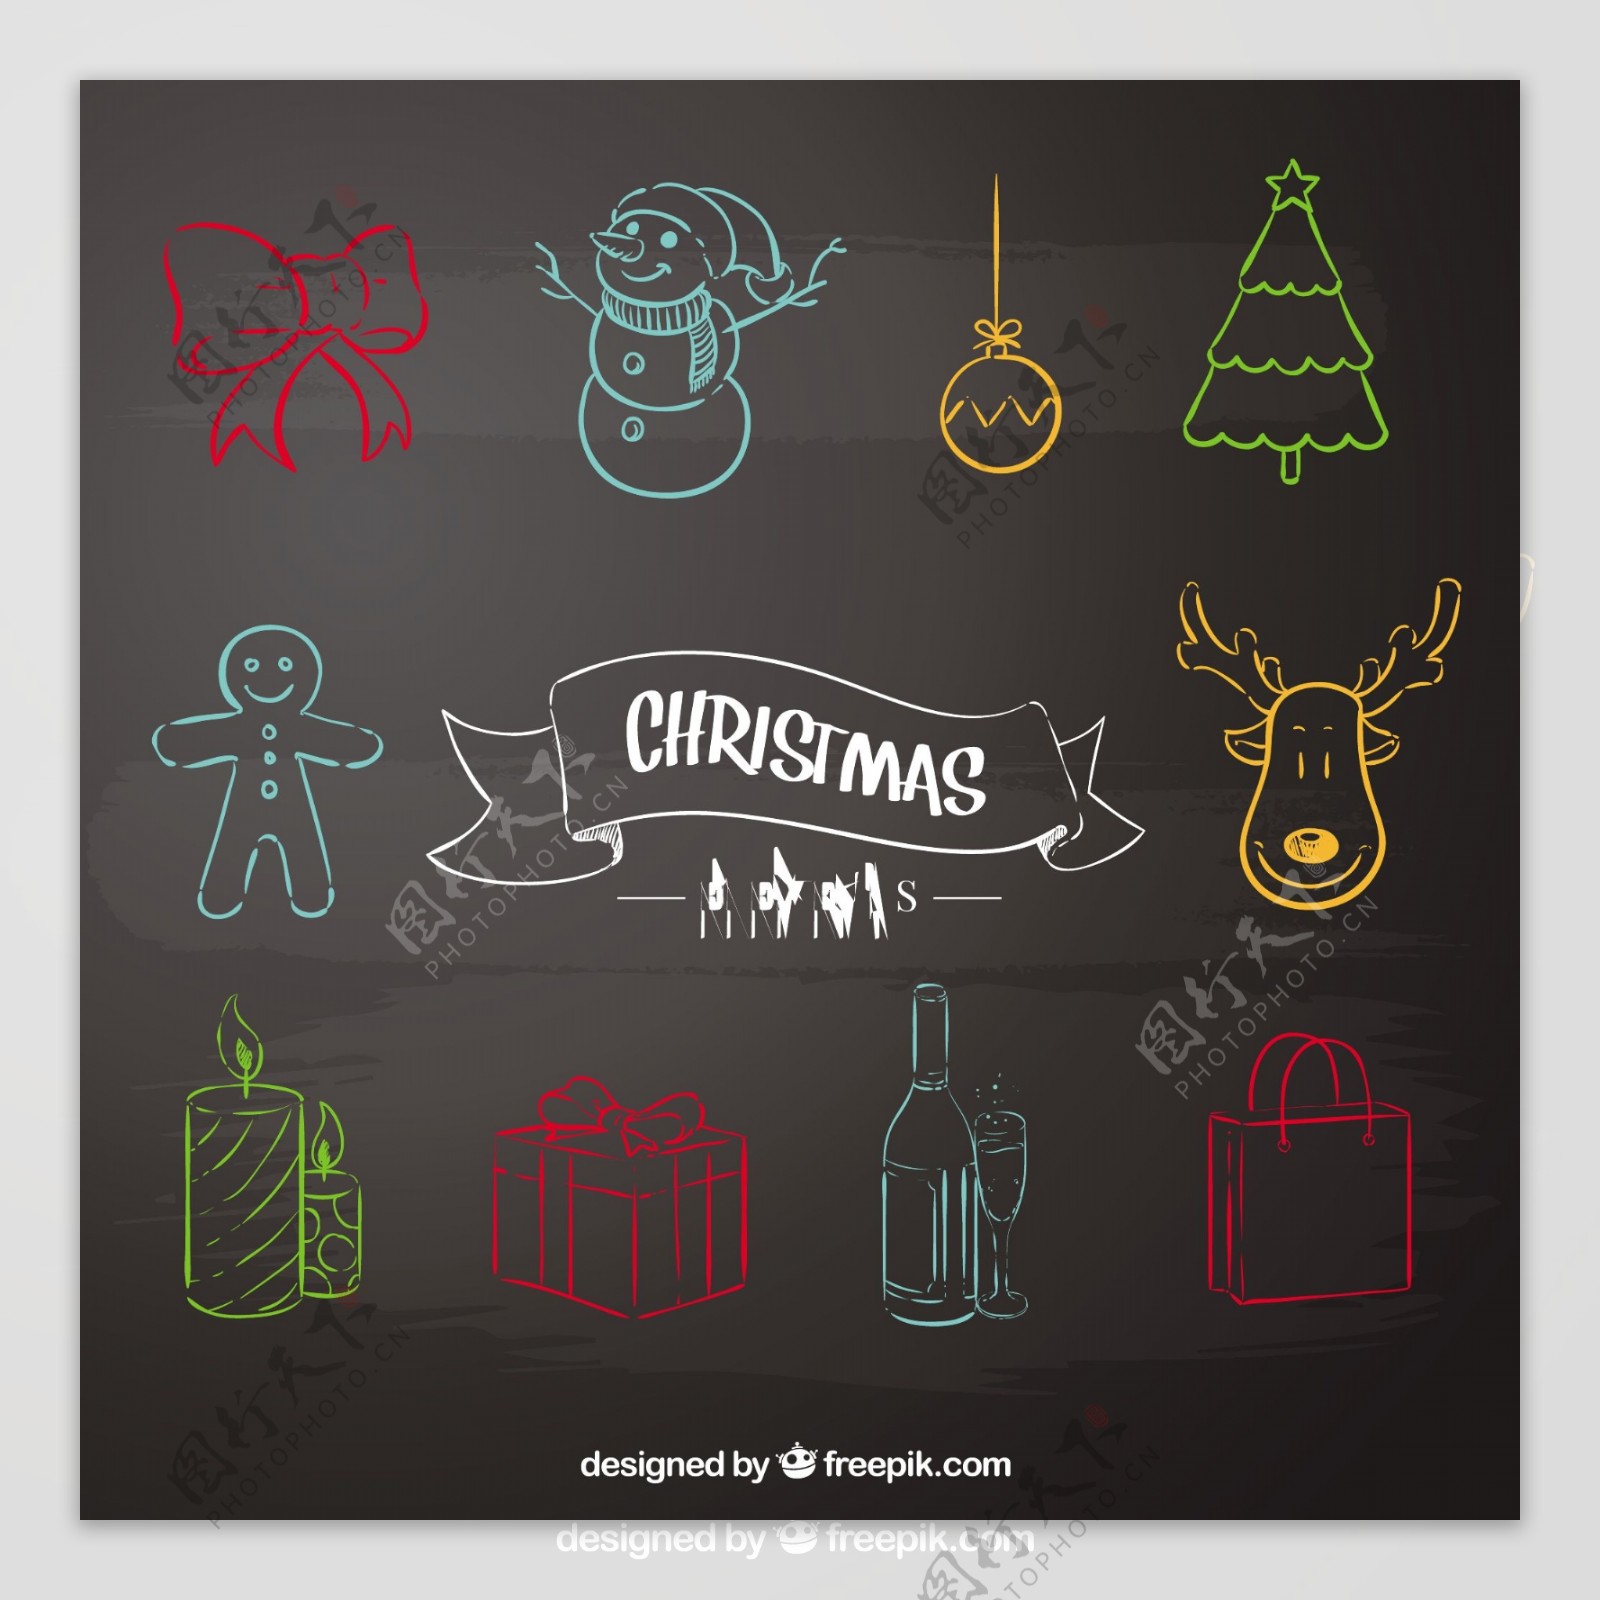 粗略的圣诞元素在黑板